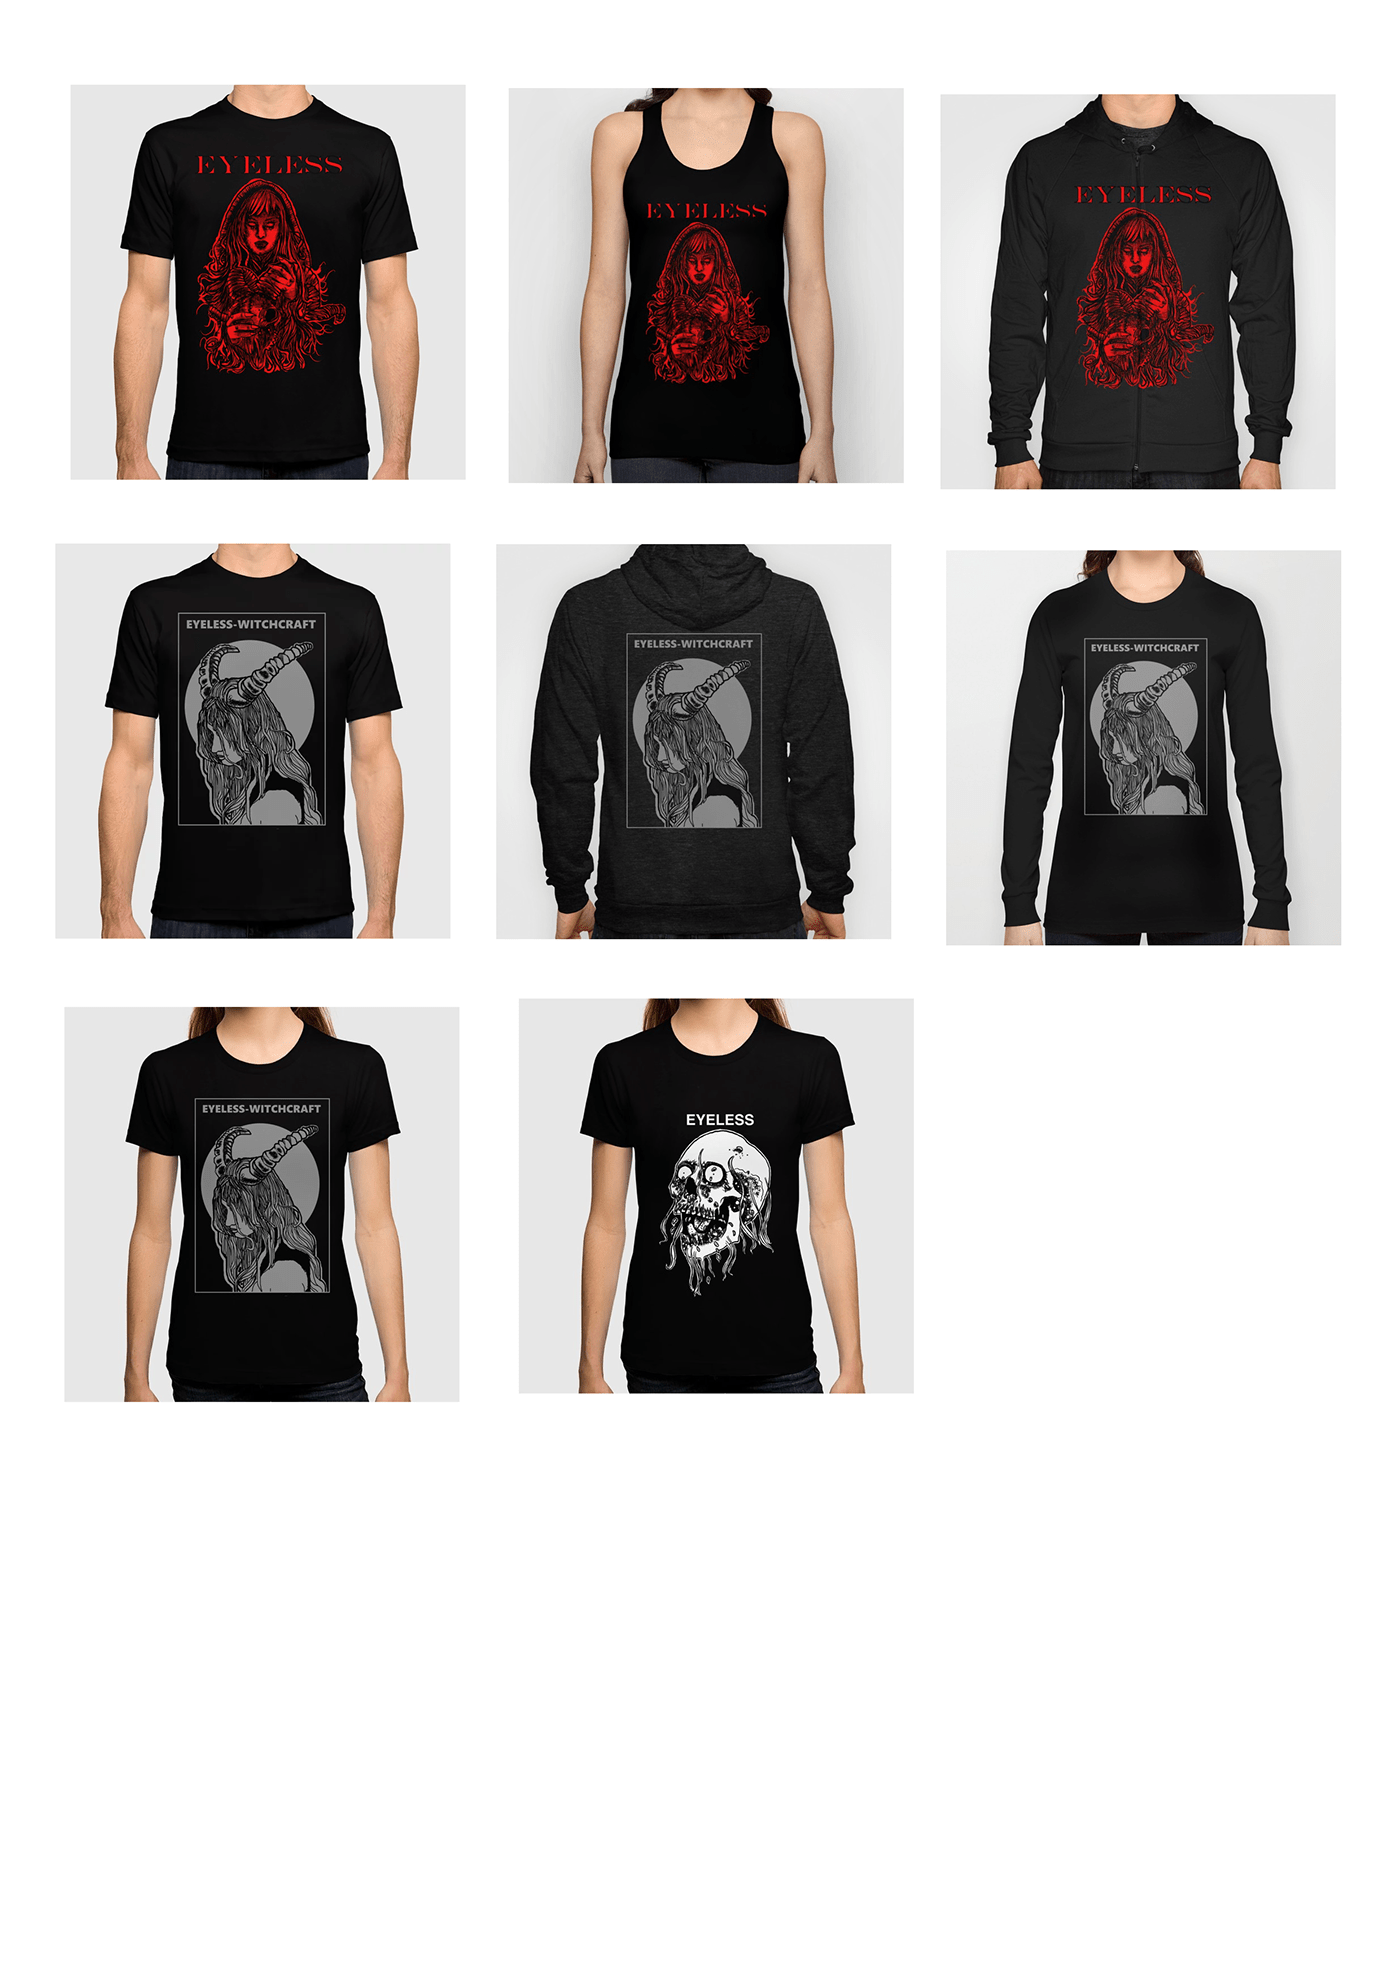 apparel Clothing t-shirt Tshirt Design Fashion  streetwear Urban metal skate Hardcore